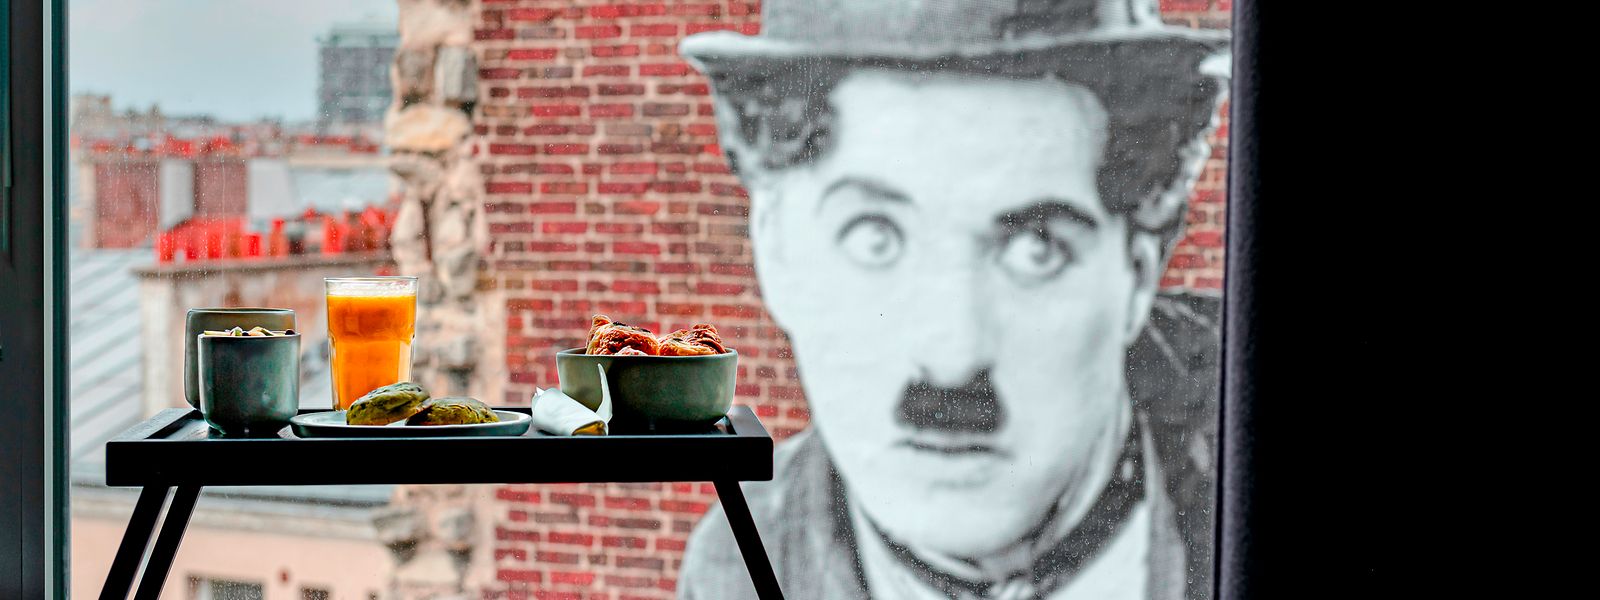 Guten Morgen! Gegenüber grüßt beim Frühstück im Bett der große Charlie Chaplin.